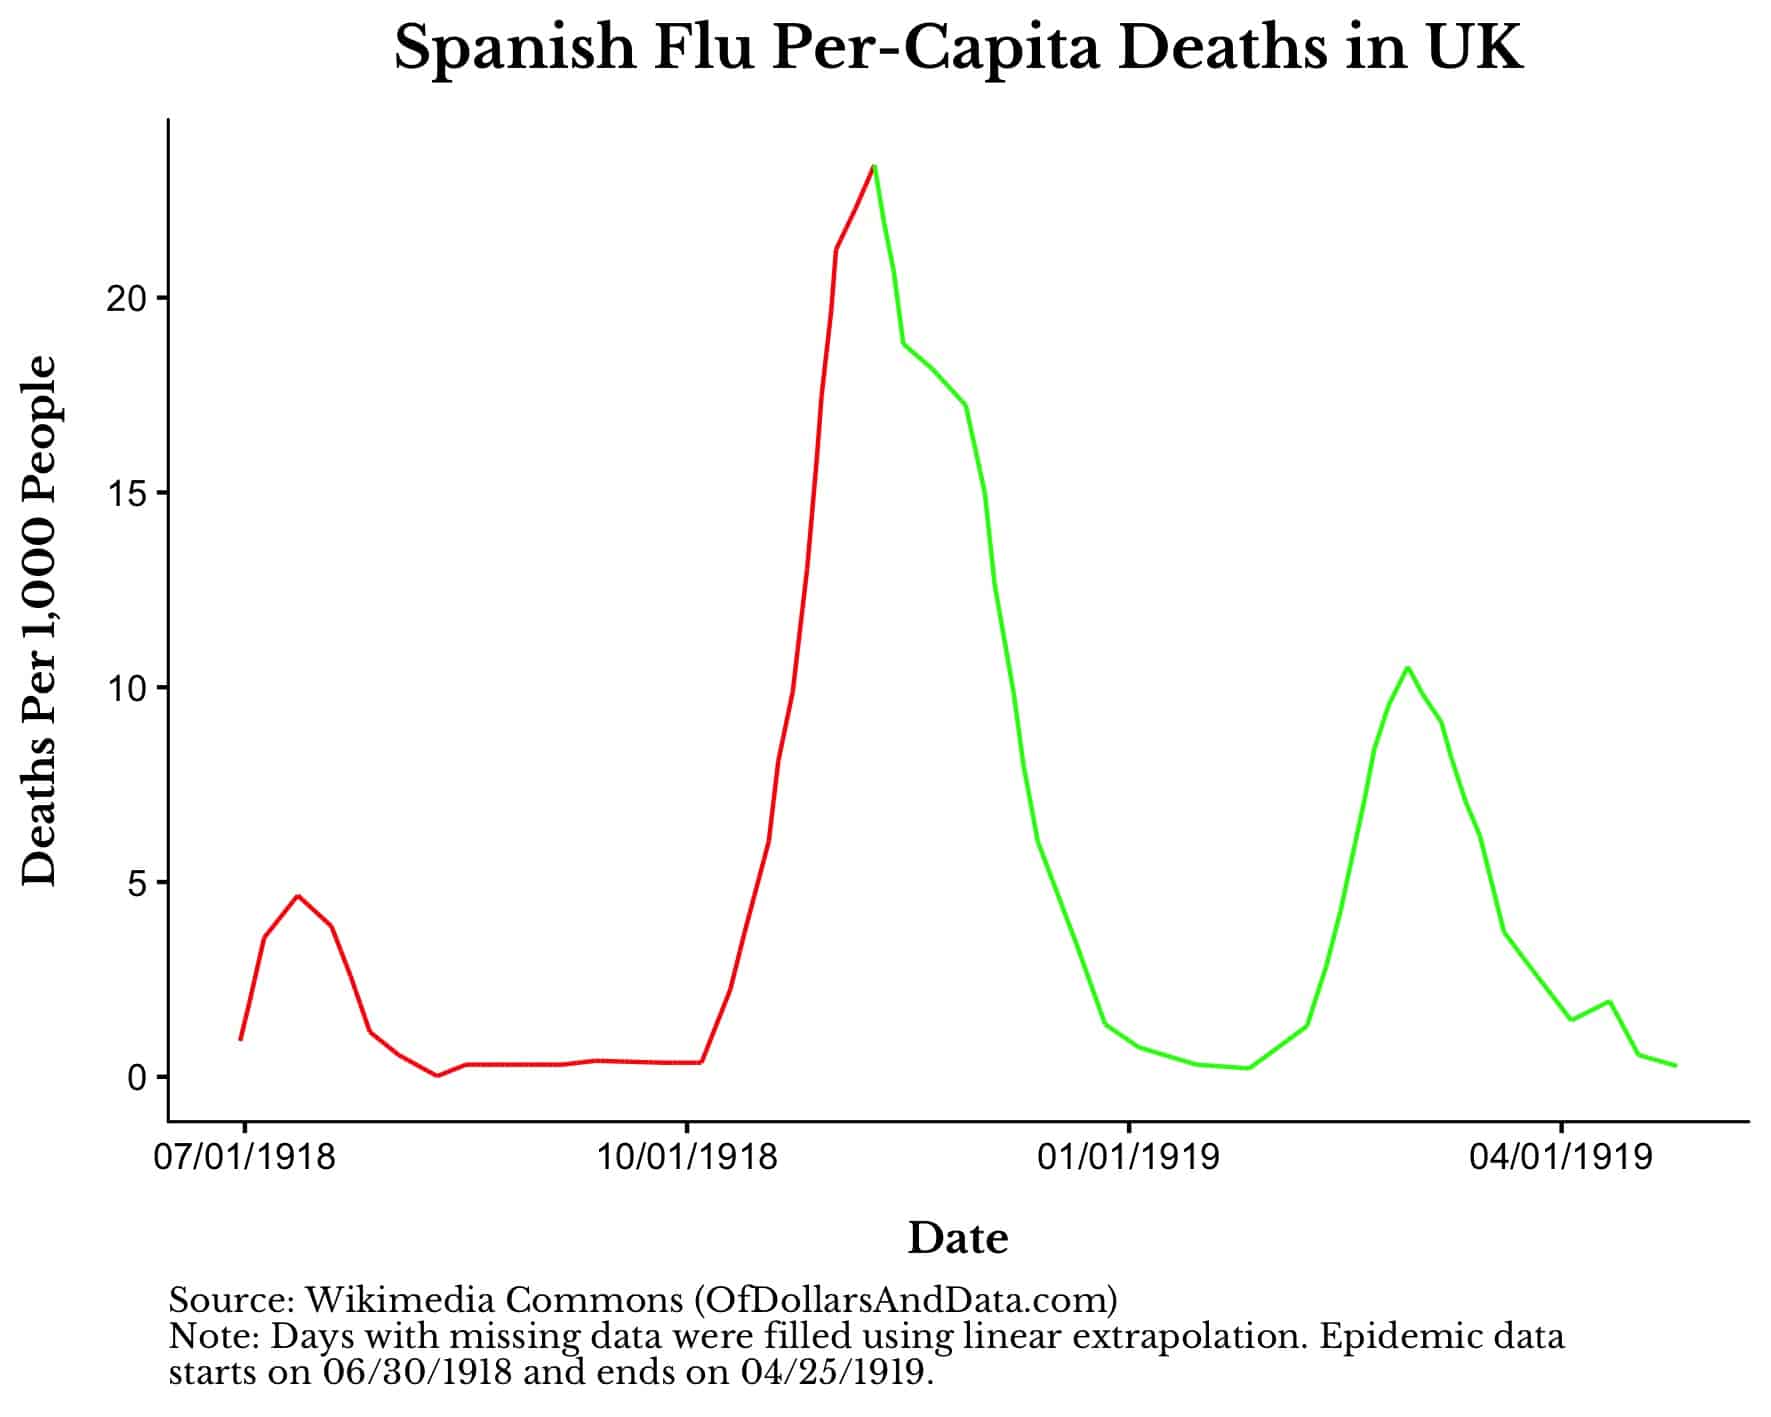 Spanish Flu per-capita deaths in the UK